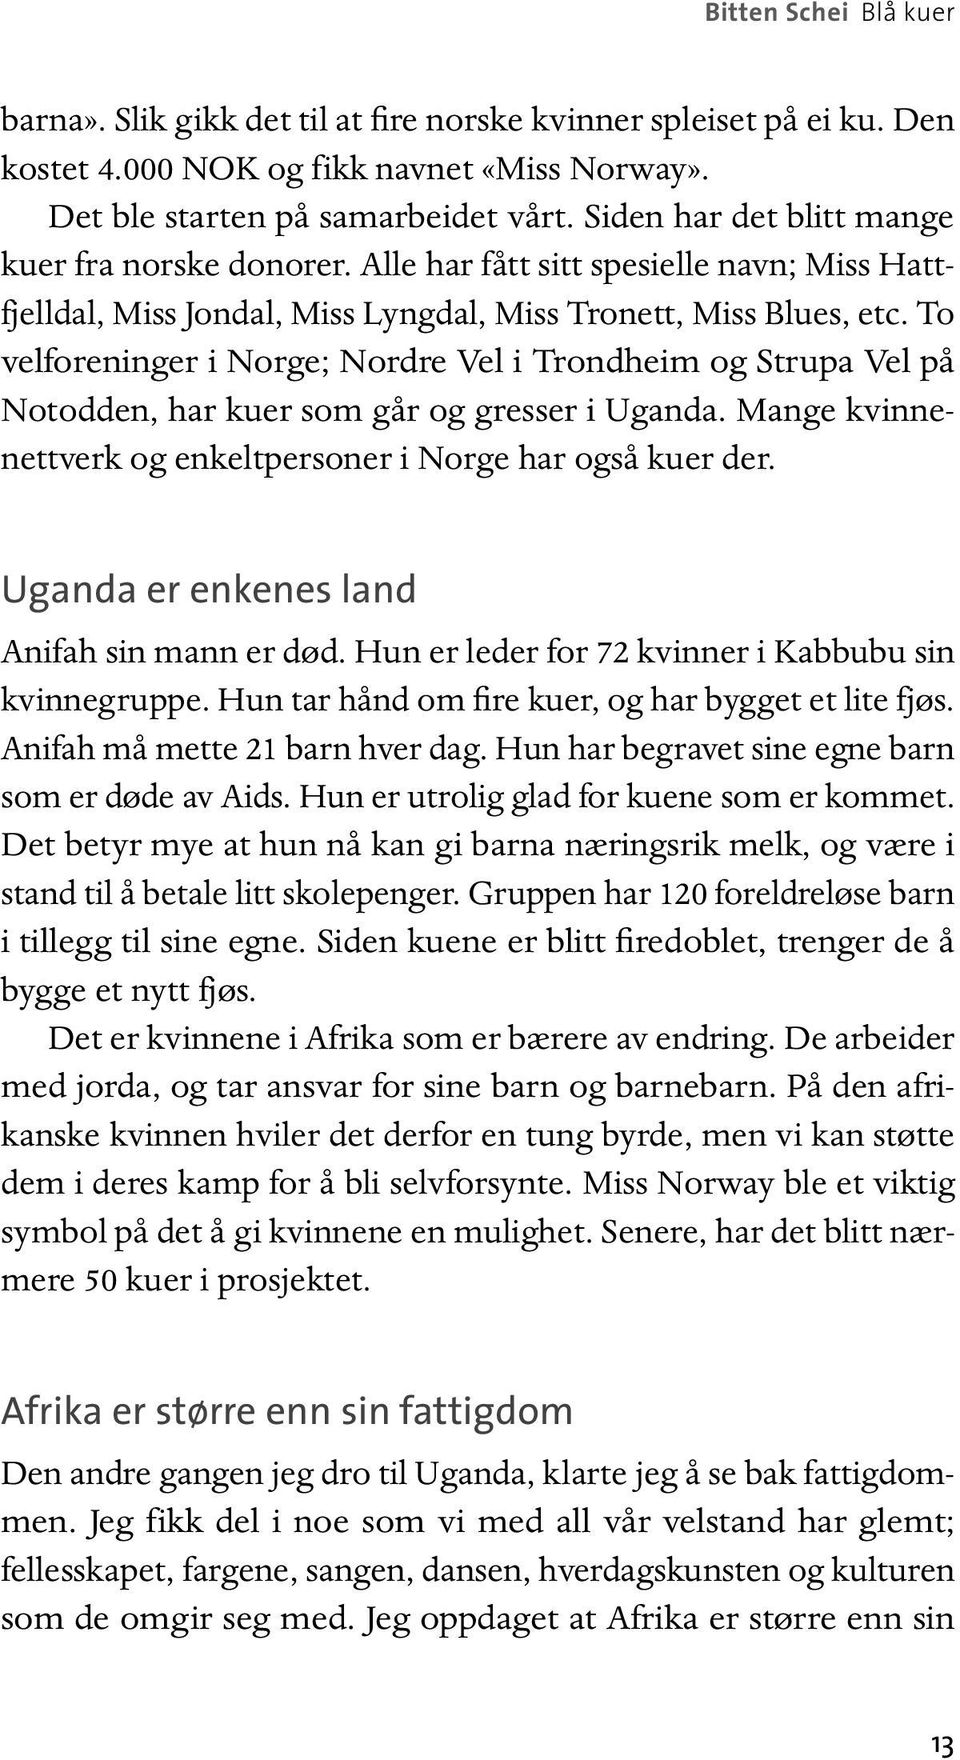 To velforeninger i Norge; Nordre Vel i Trondheim og Strupa Vel på Notodden, har kuer som går og gresser i Uganda. Mange kvinnenettverk og enkeltpersoner i Norge har også kuer der.